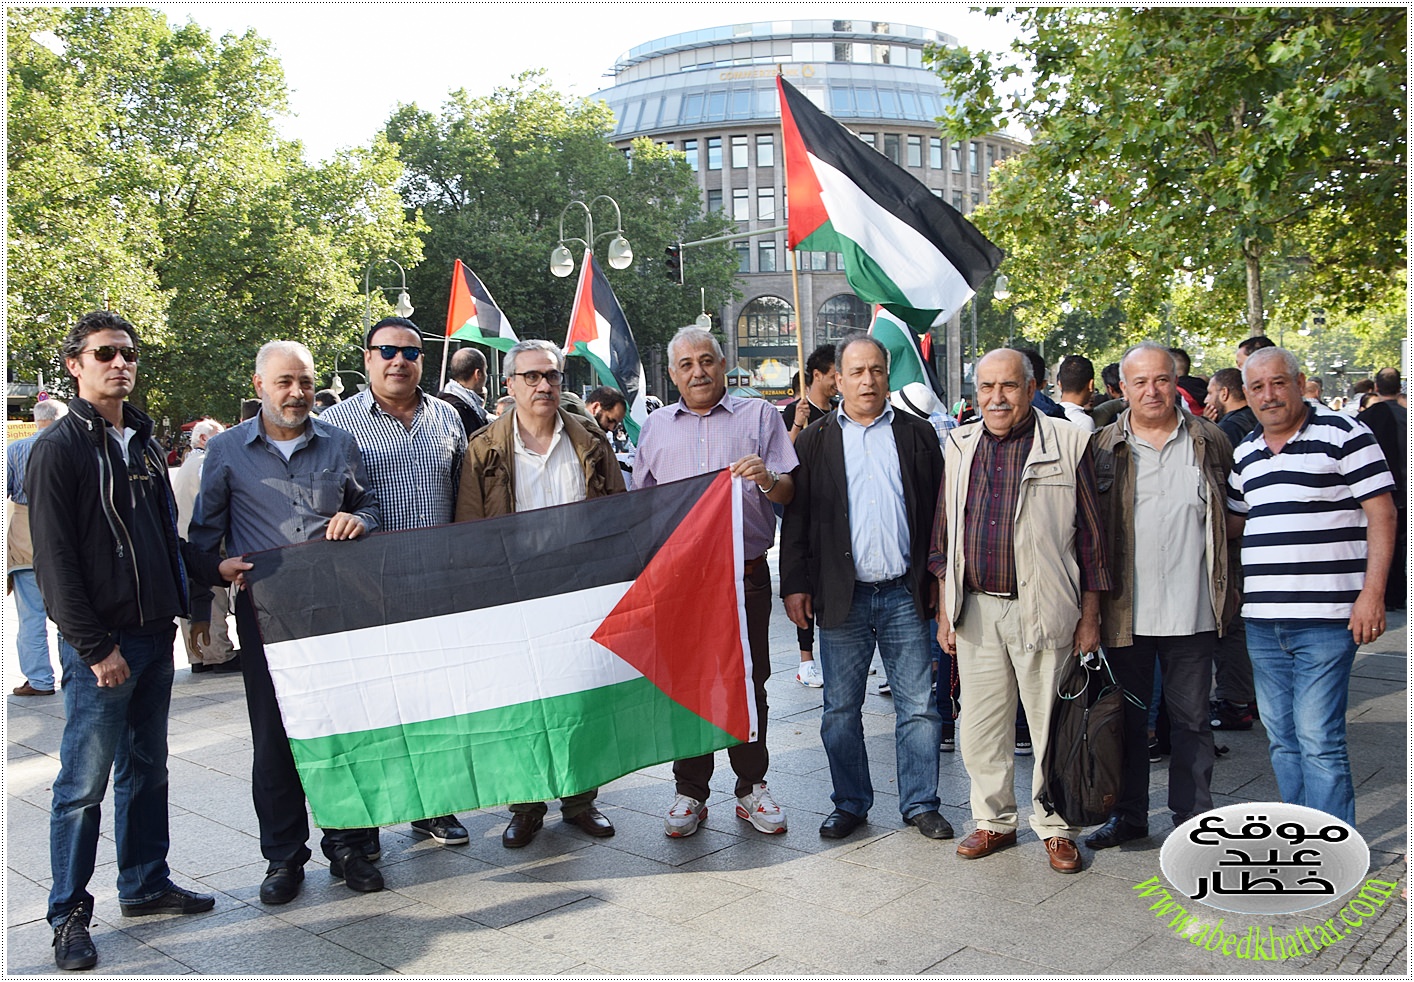 الدكتور خليل عيادي، التقيت به في تظاهرة فلسطينية في برلين